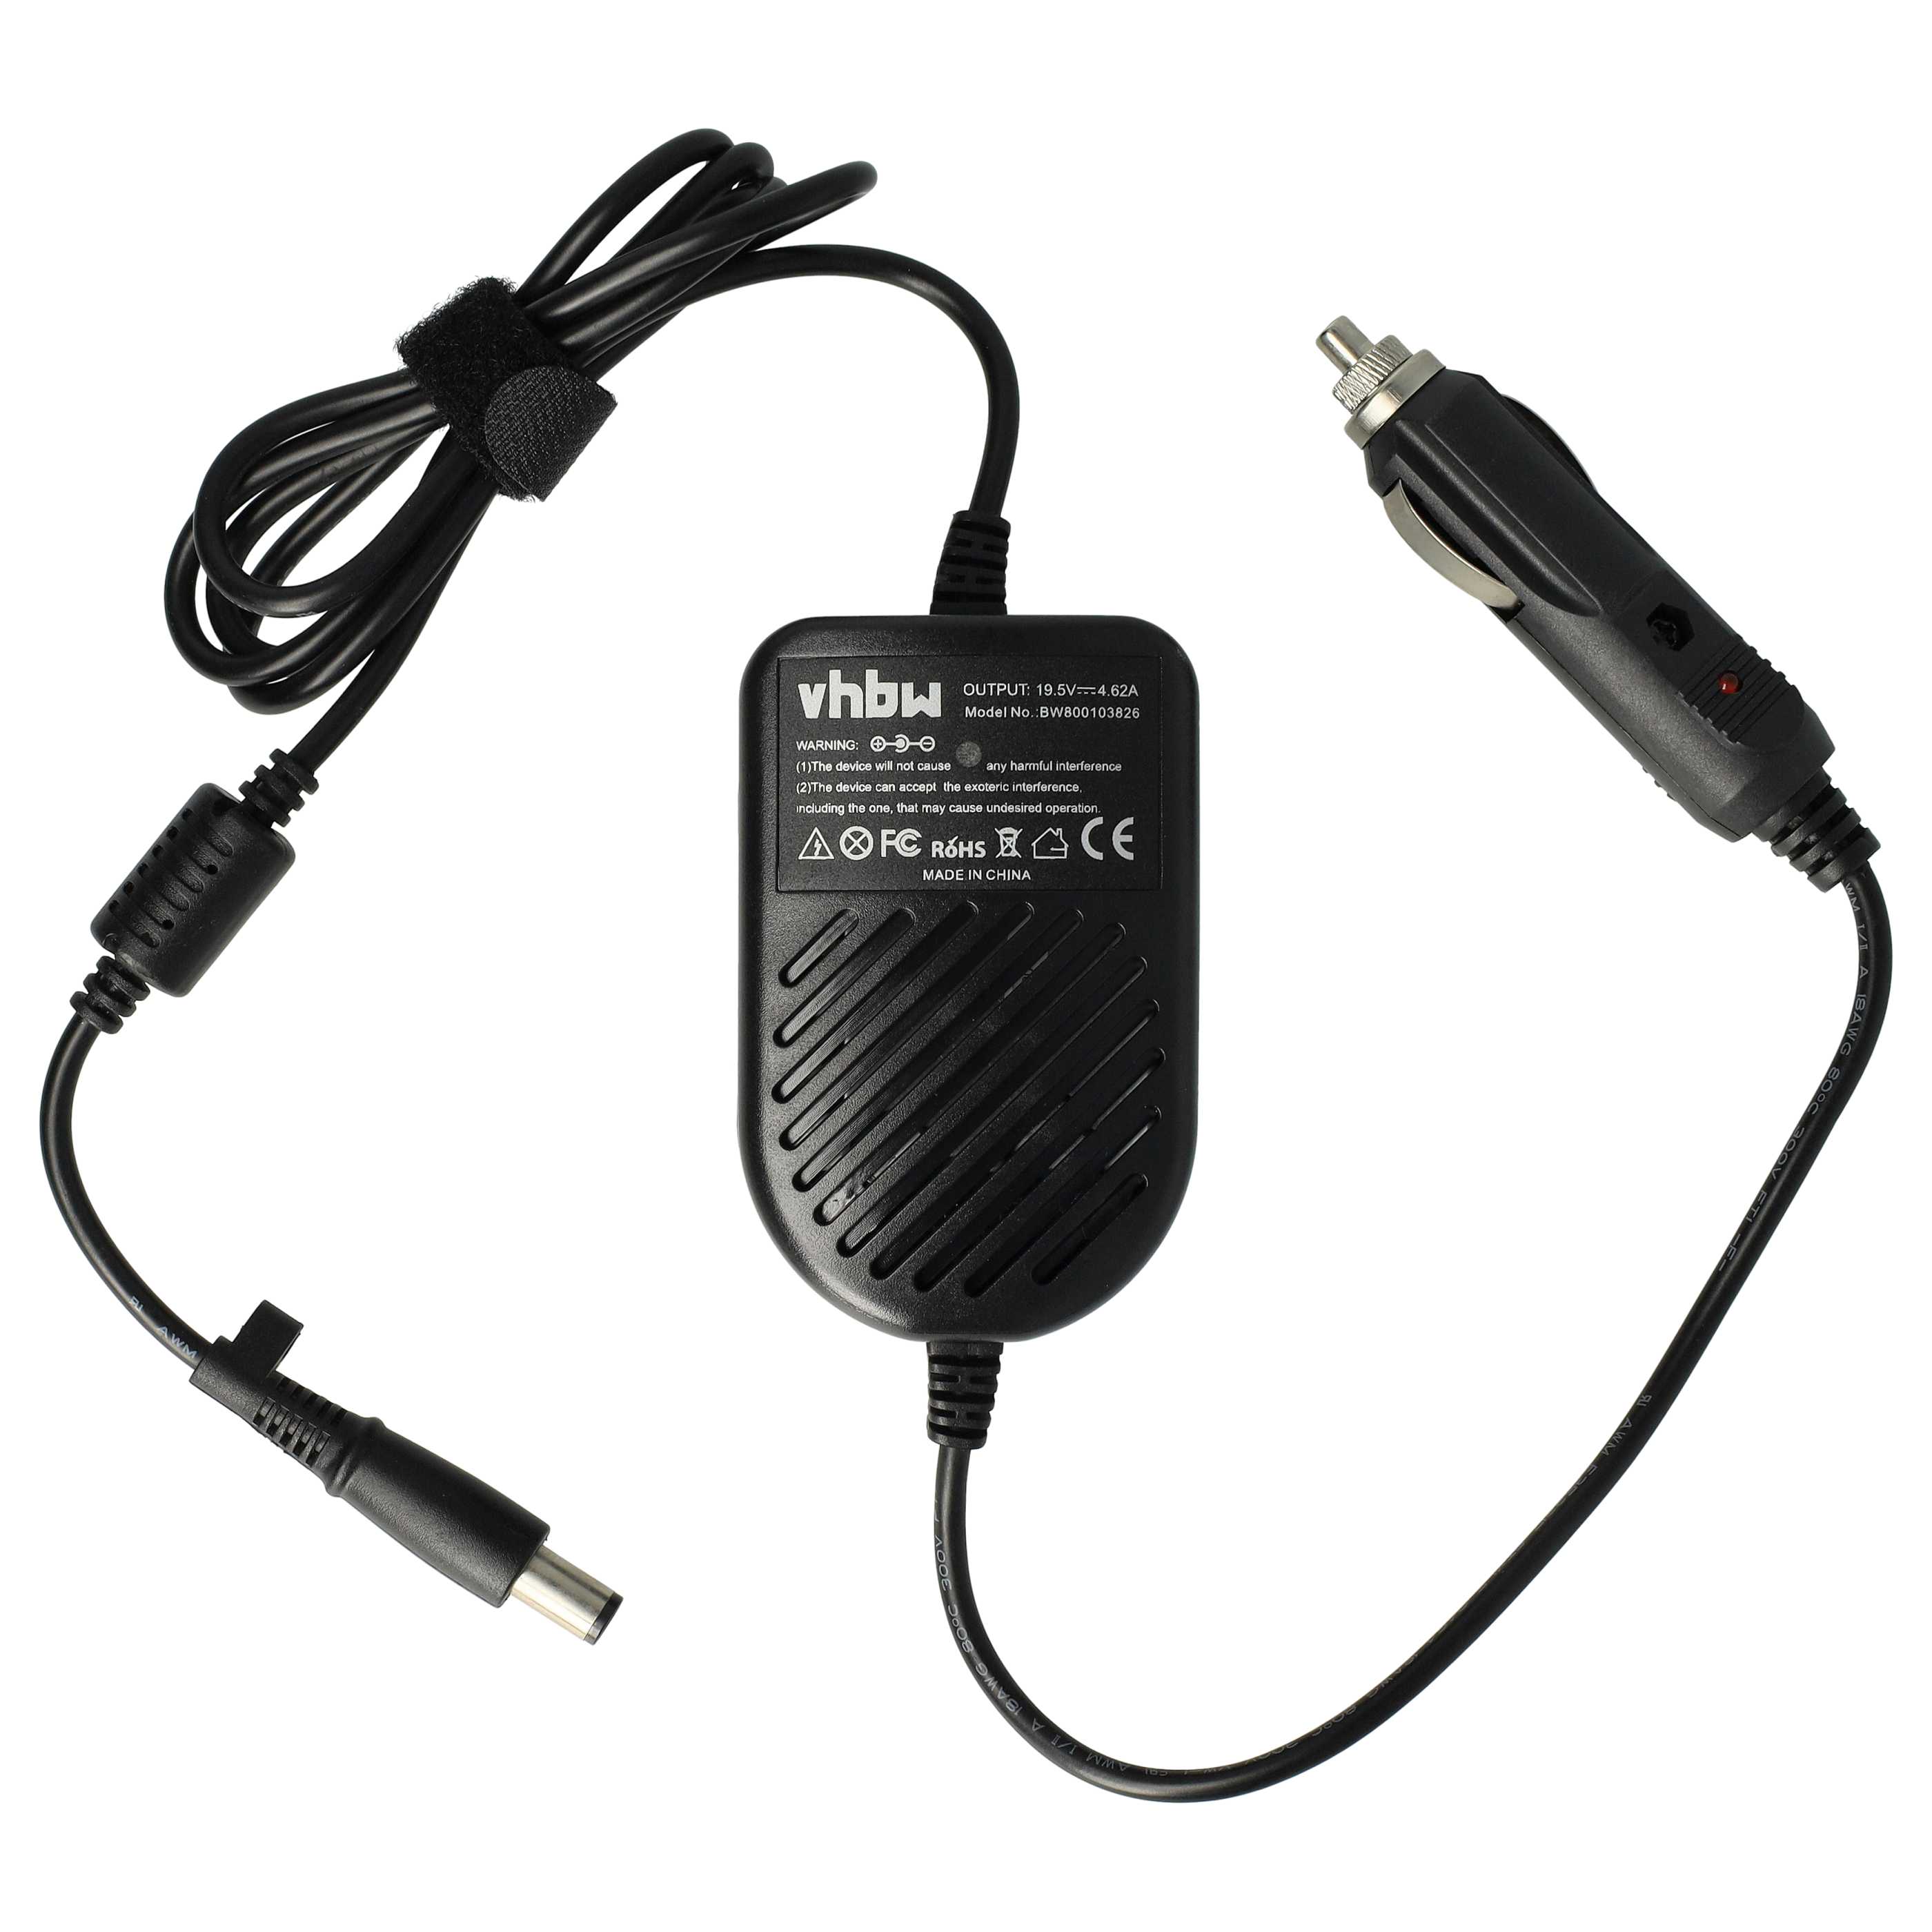 Chargeur auto remplace Dell 0RM805, 0F266, 310-2862, 0RM809, 09T215, 02H098 pour ordinateur portable - 4.62 A